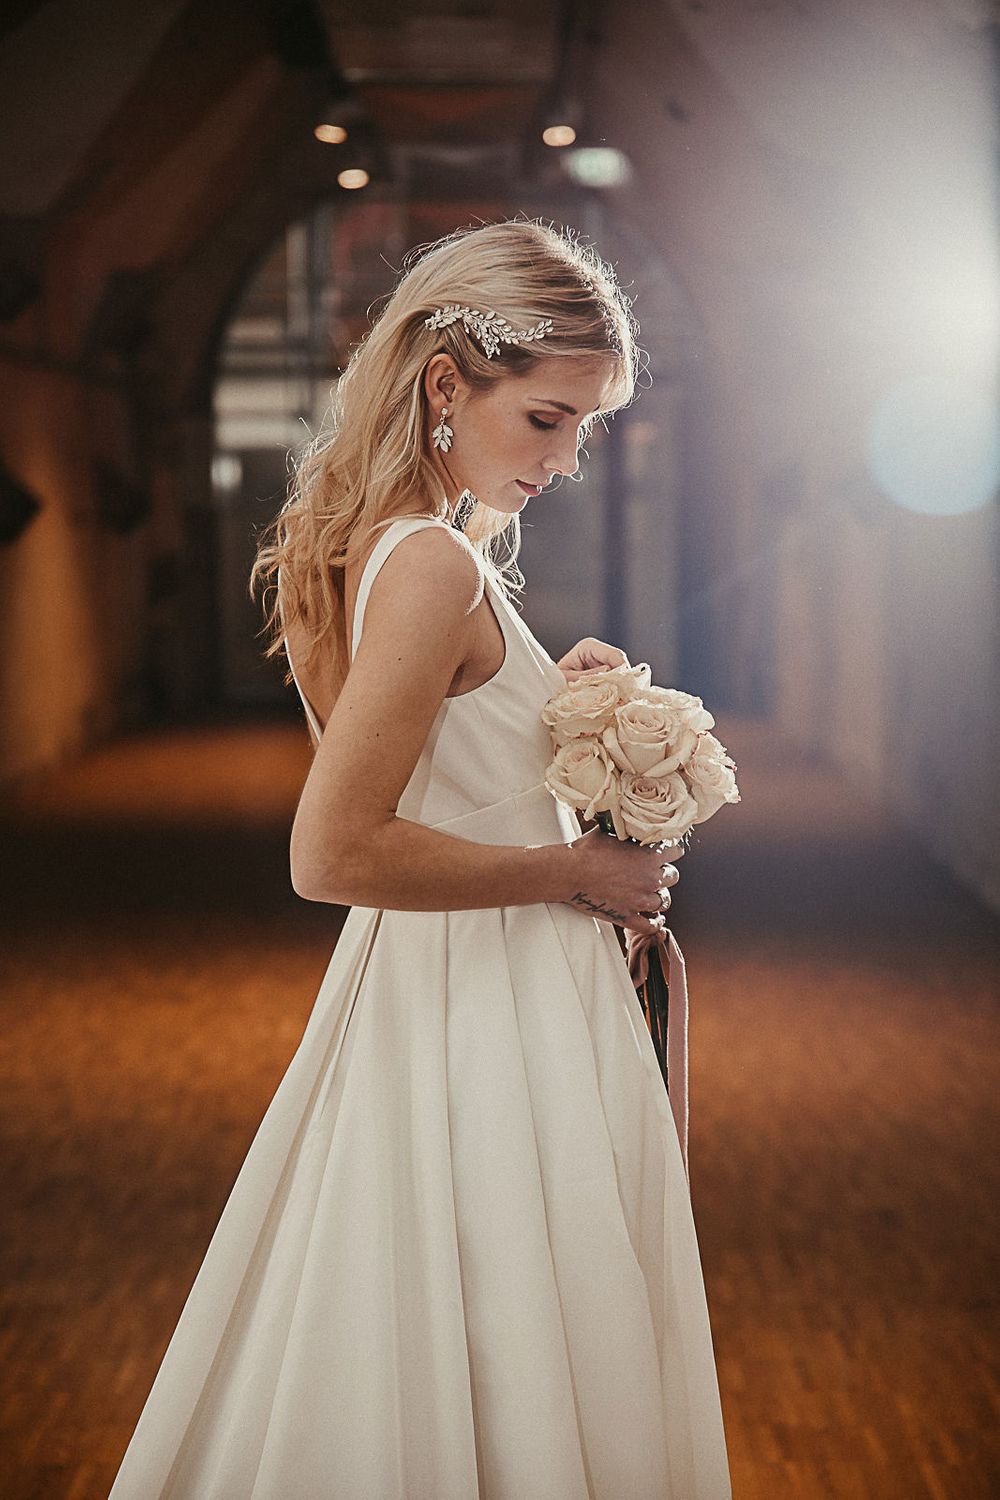 Eine Braut in einem weißen Hochzeitskleid hält einen Blumenstrauß.